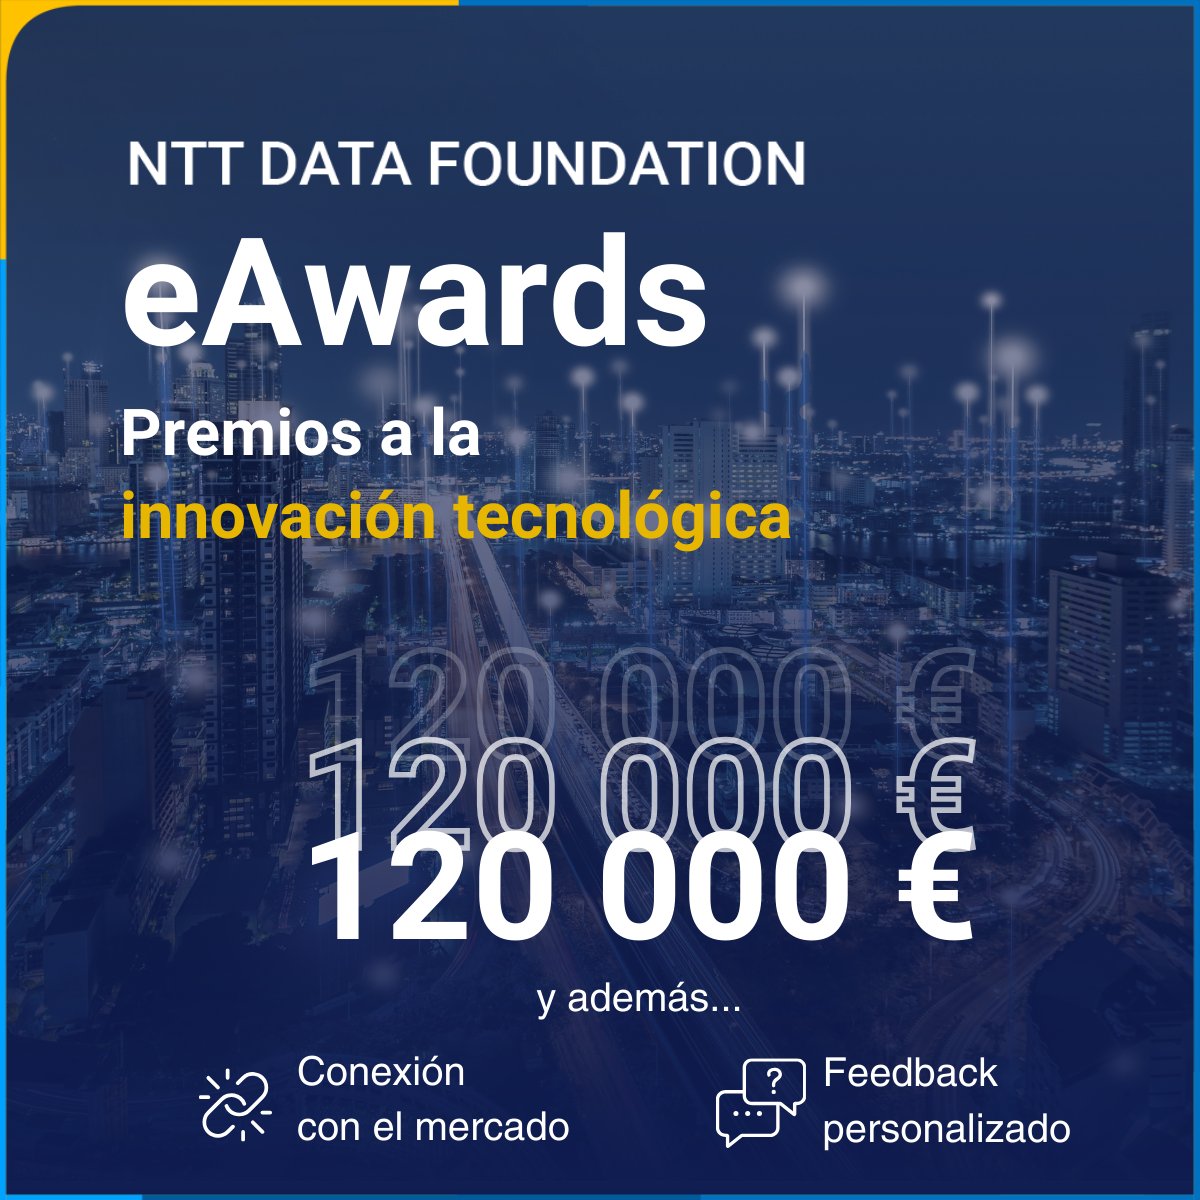 Último día para inscribirse en los eAwards España de @nttdfoundation 🥇 Premio nacional 20.000€ + acceso a Global eAwards +100.000€ ✅ 📲globaleawards.com/es/spain/